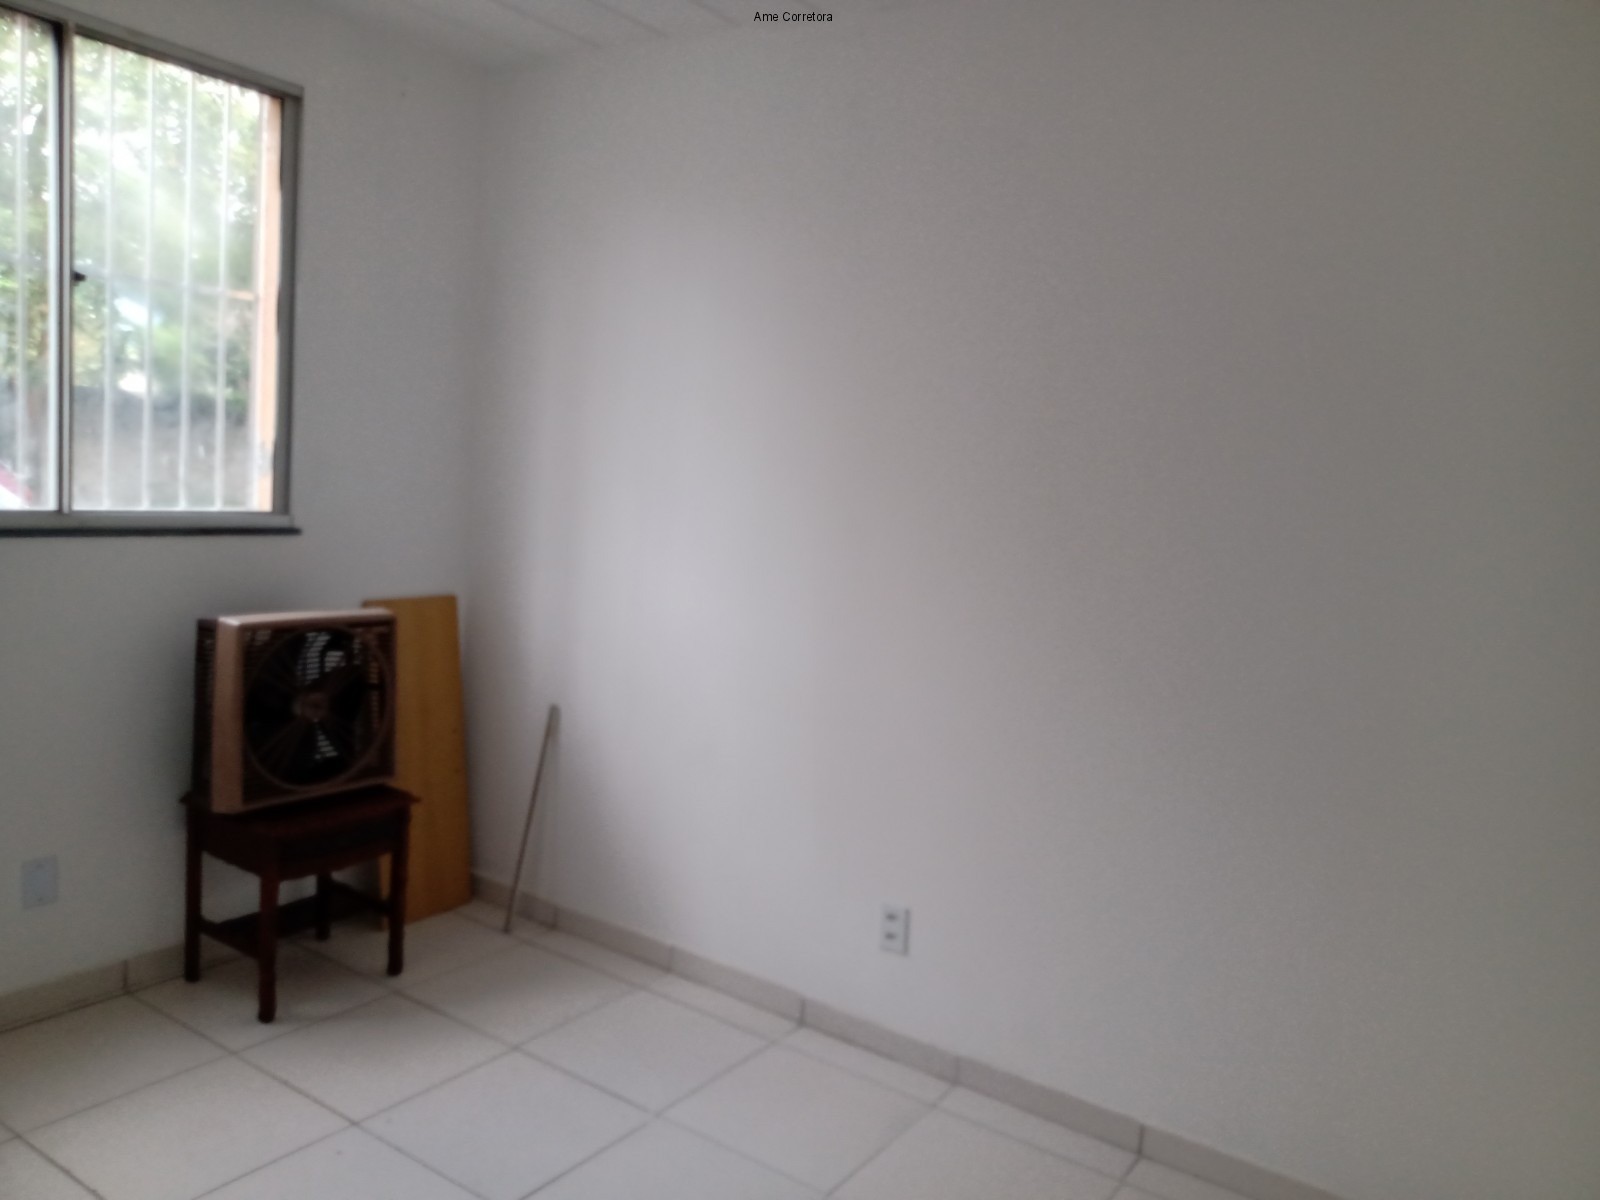 FOTO 03 - Apartamento 2 quartos à venda Rio de Janeiro,RJ - R$ 129.900 - AP00361 - 4